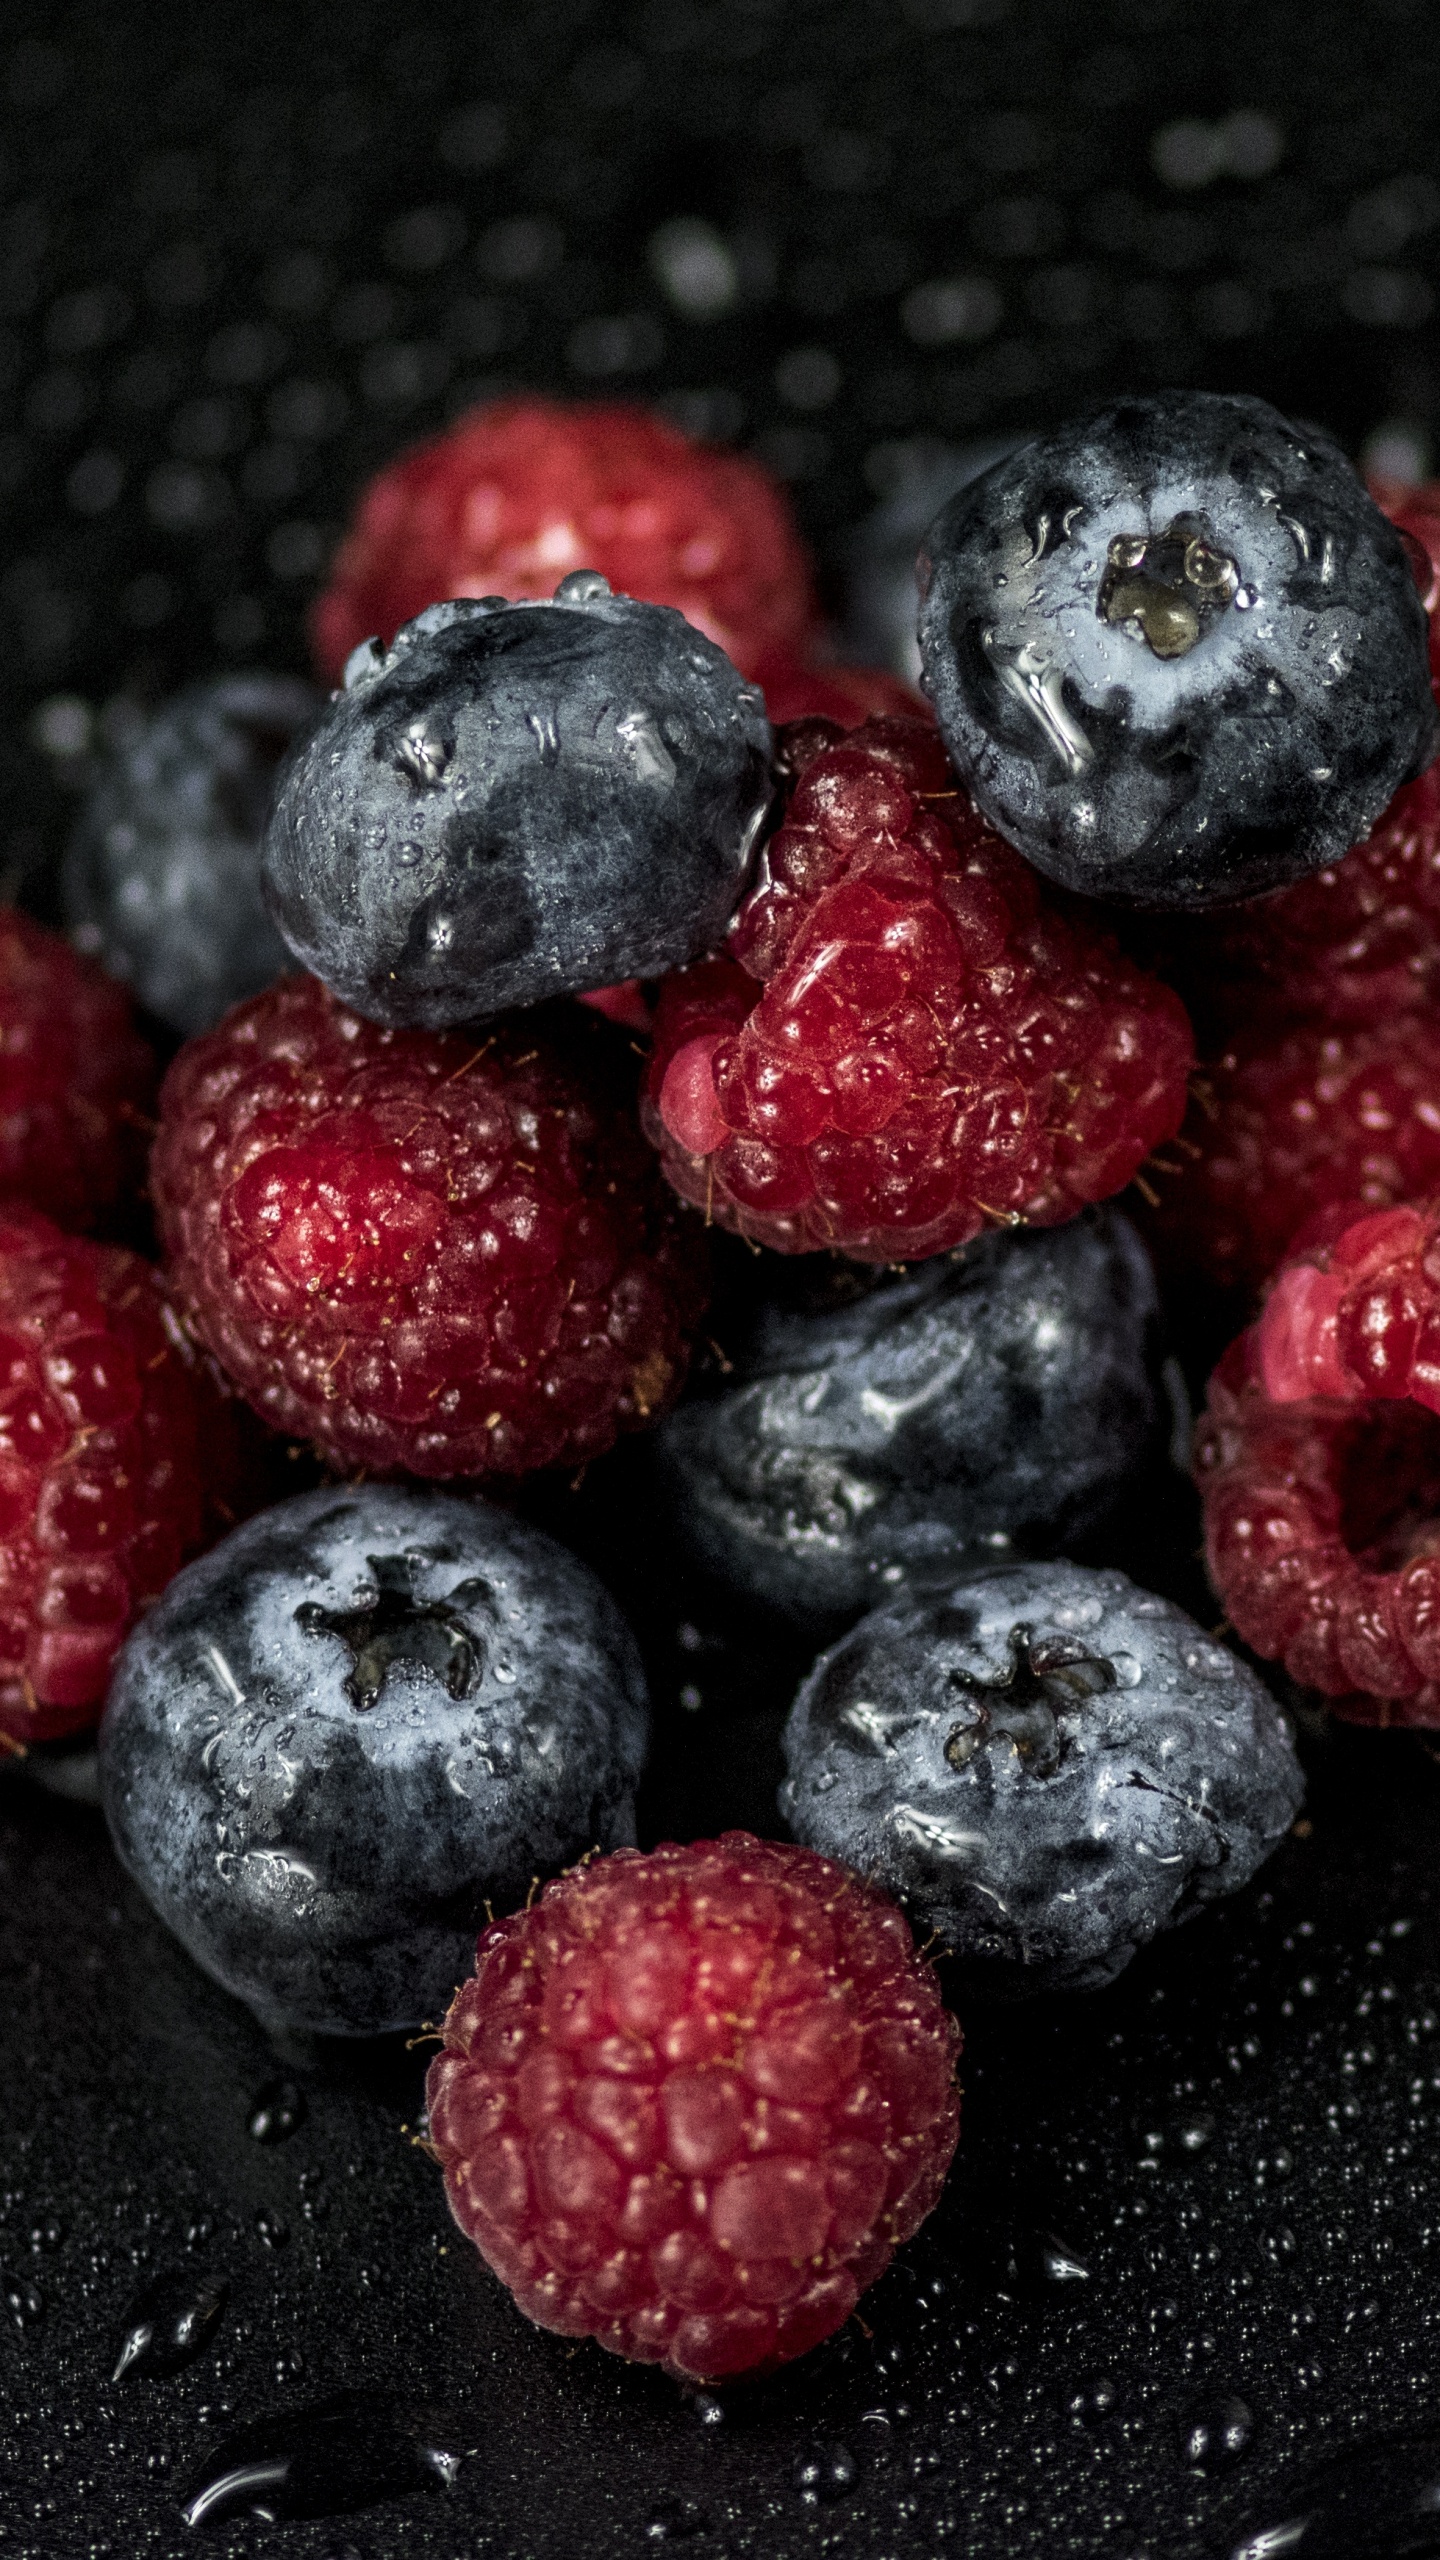 蓝莓, 树莓, 红树莓, 食品, 超级 壁纸 1440x2560 允许